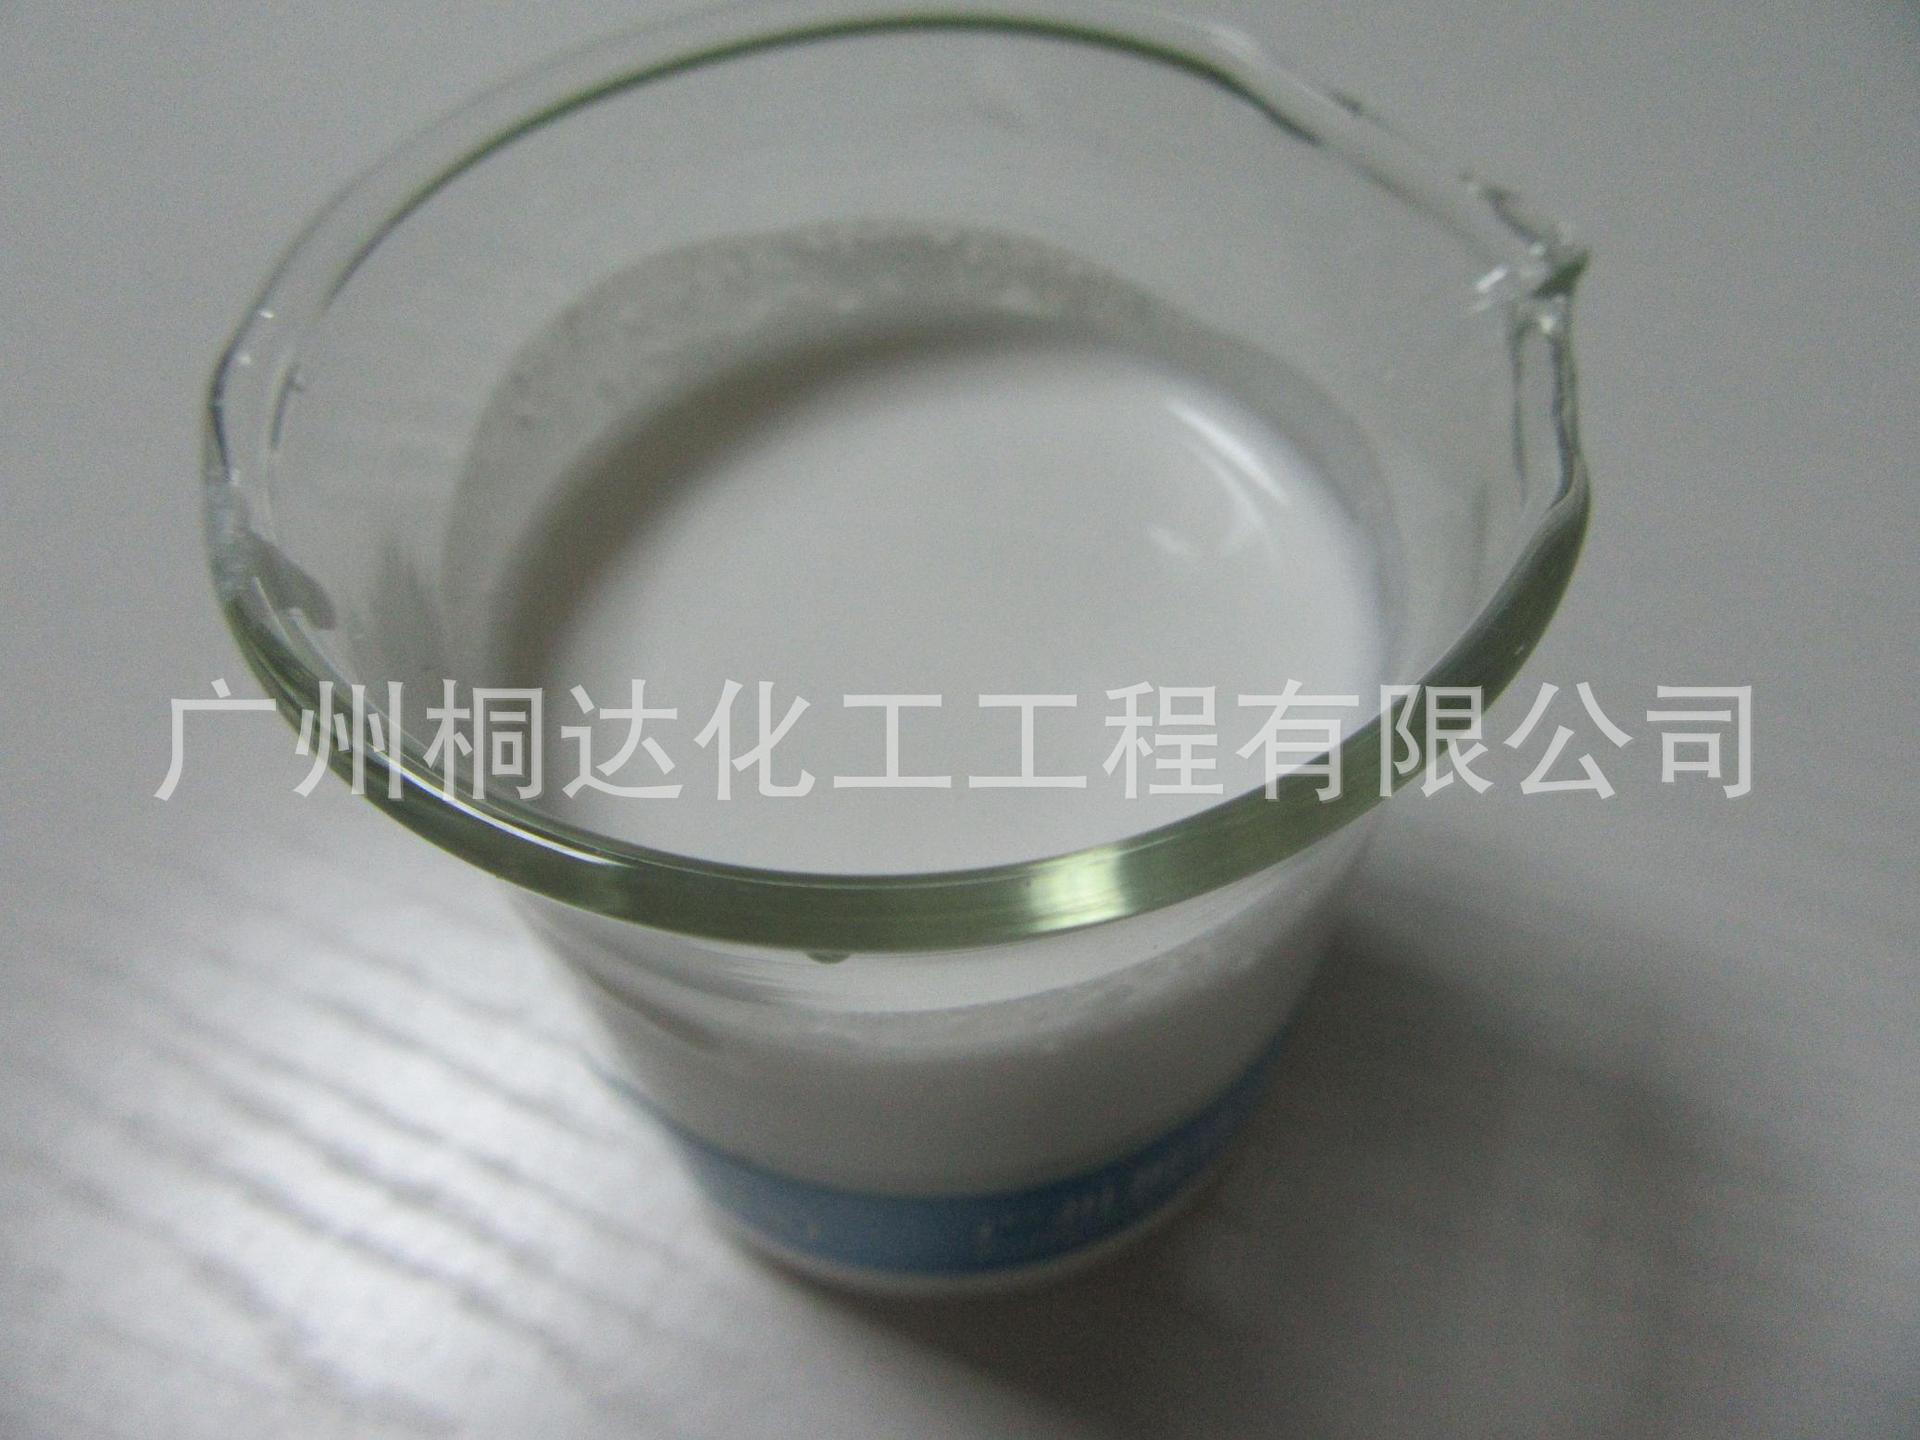 RRJ-211 柔软剂、织物超蓬松柔软剂 适用于纯棉、涤纶、涤棉等示例图3